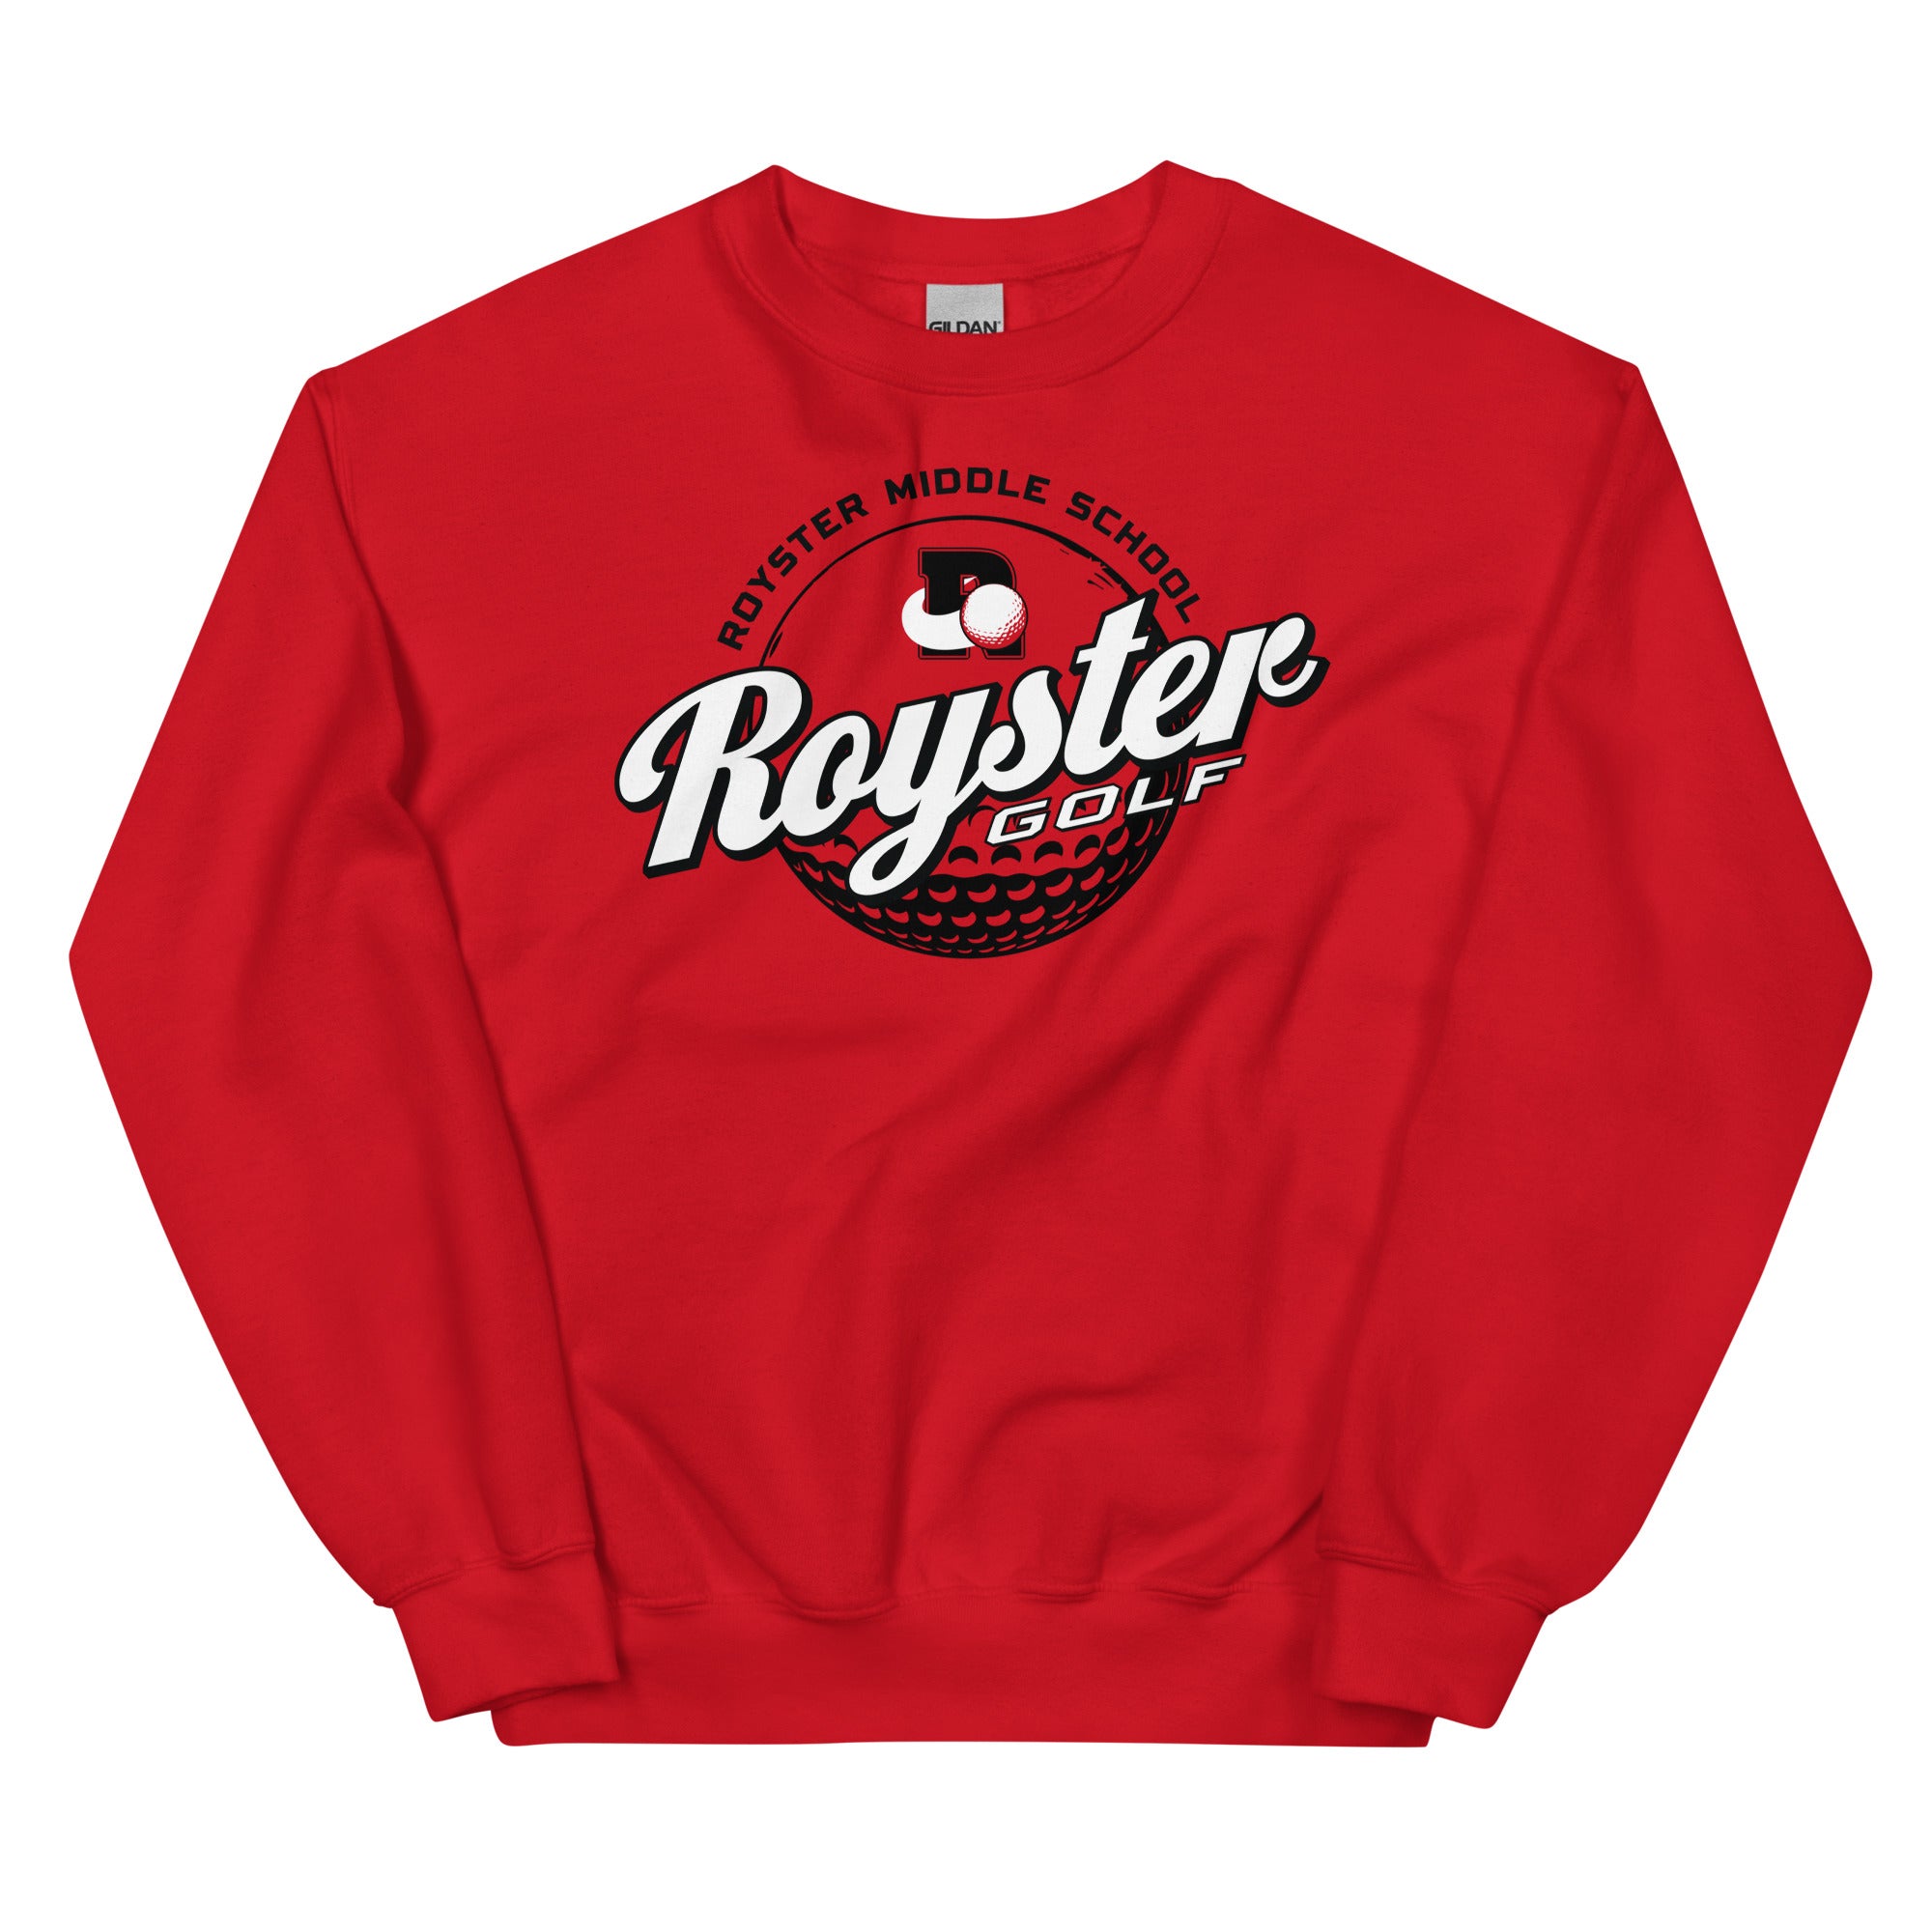 Royster Rockets Golf Unisex Crew Neck Sweatshirt